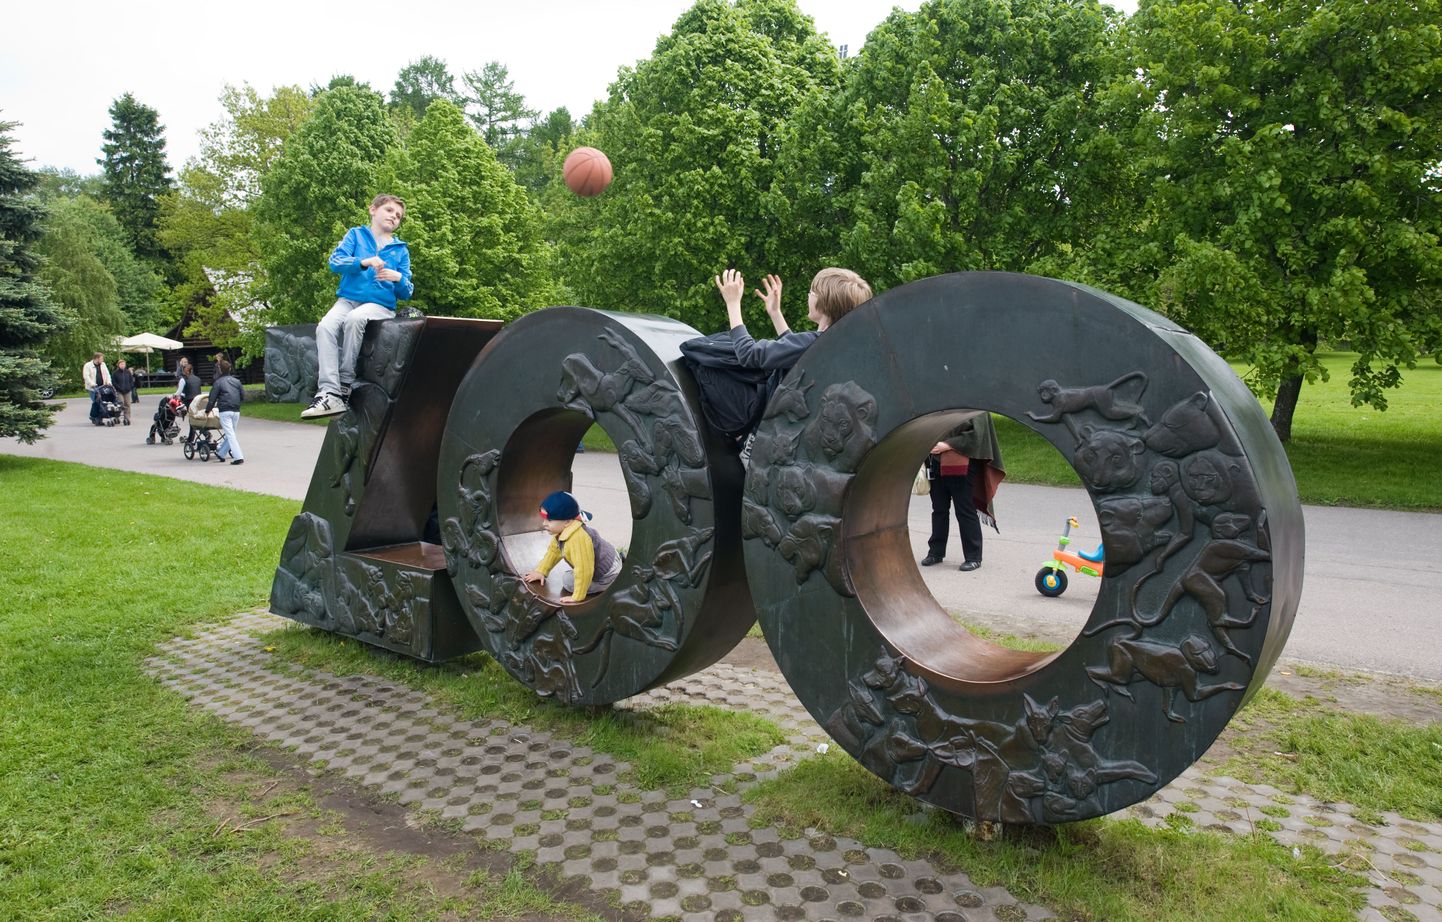 Lastekaitsepäeva tähistamine Tallinna loomaaias.